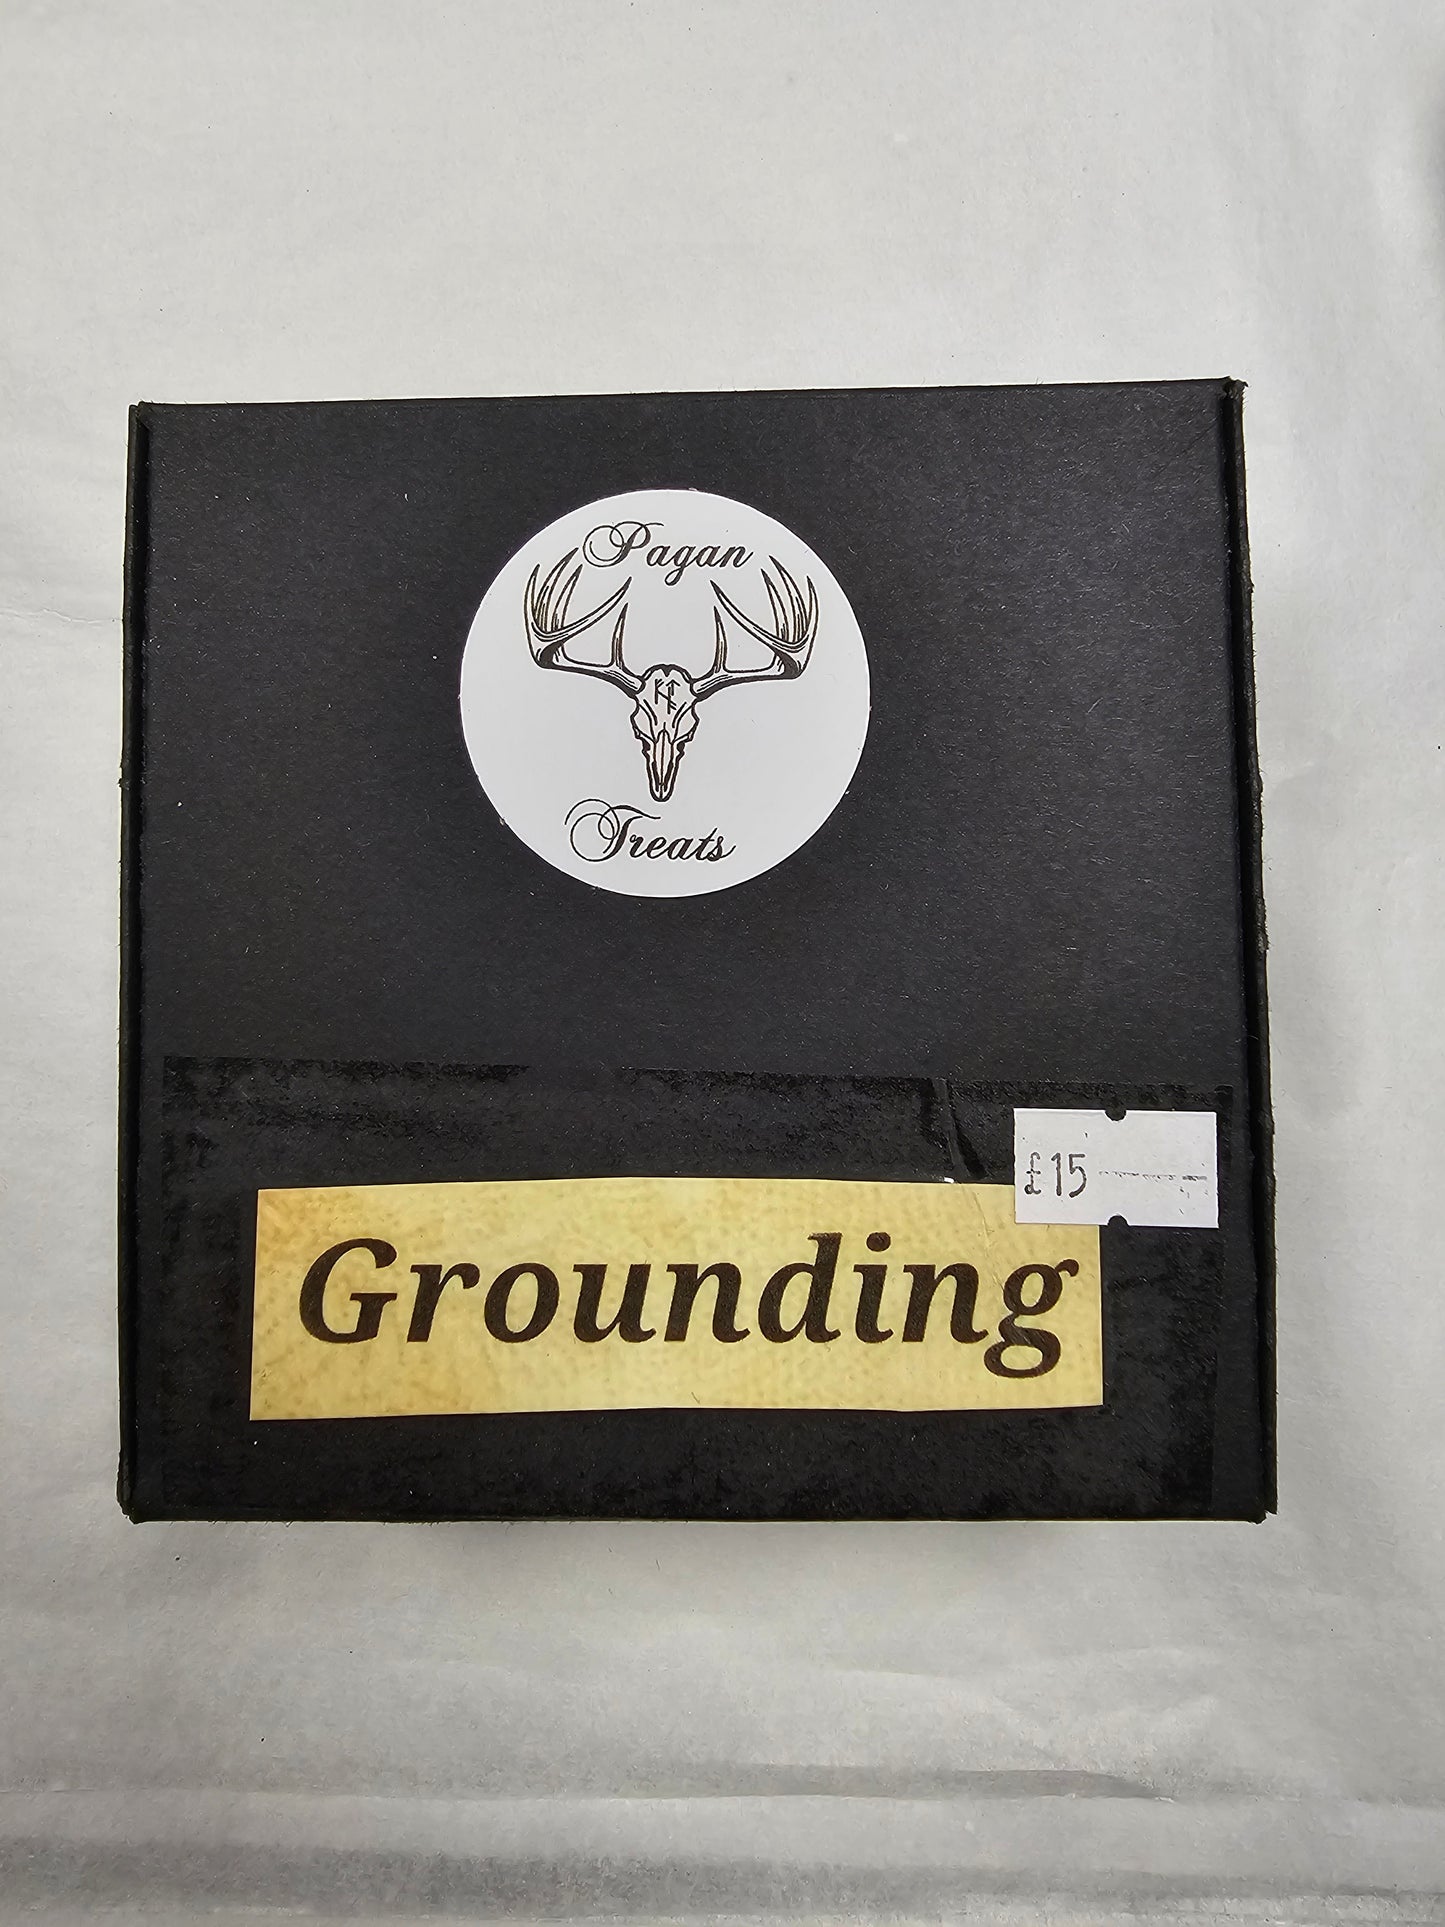 Grounding gift box